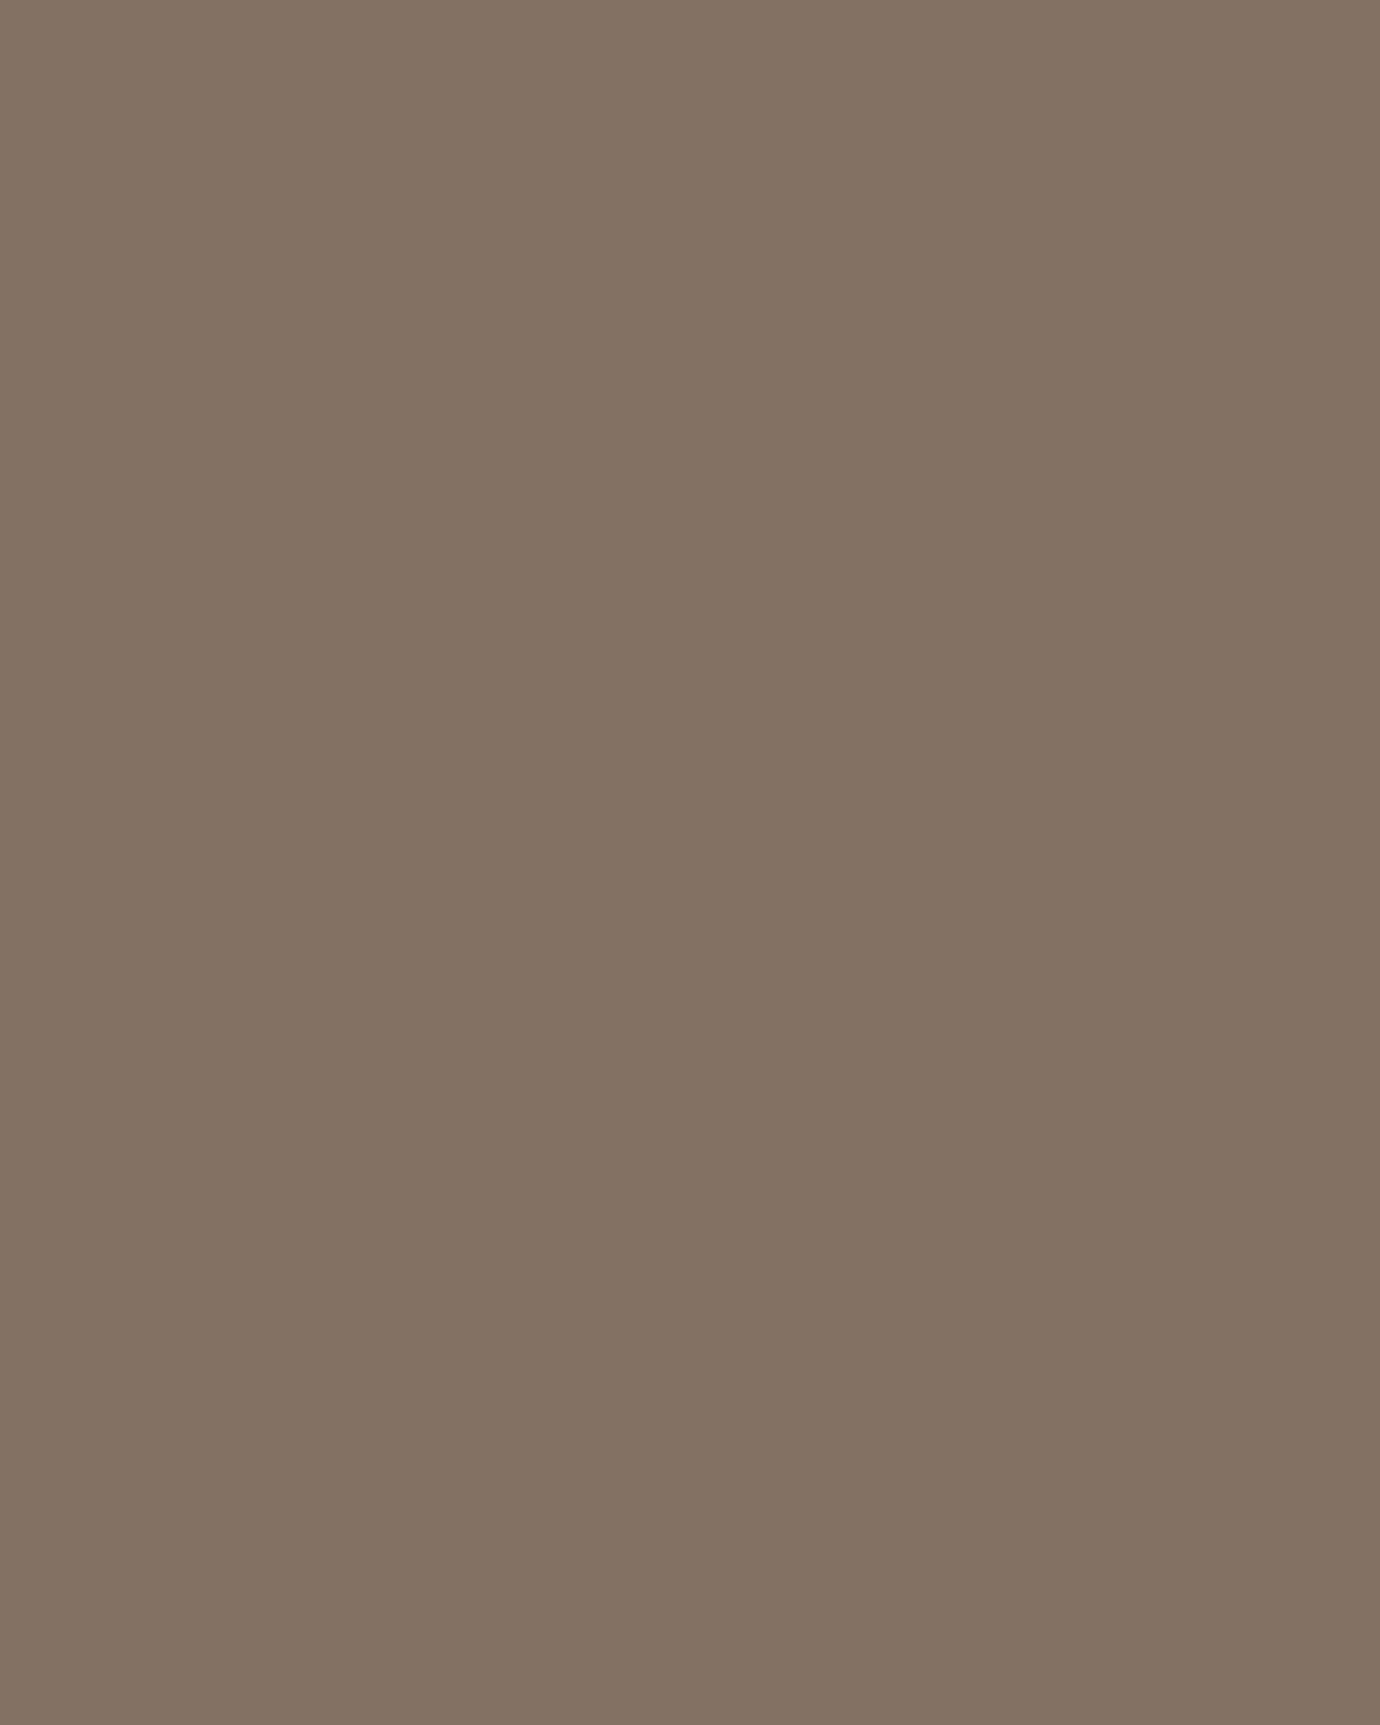 Игорь Стравинский со своими детьми. 1915. Морж, Швейцария. Фотография: fondation-igor-stravinsky.org